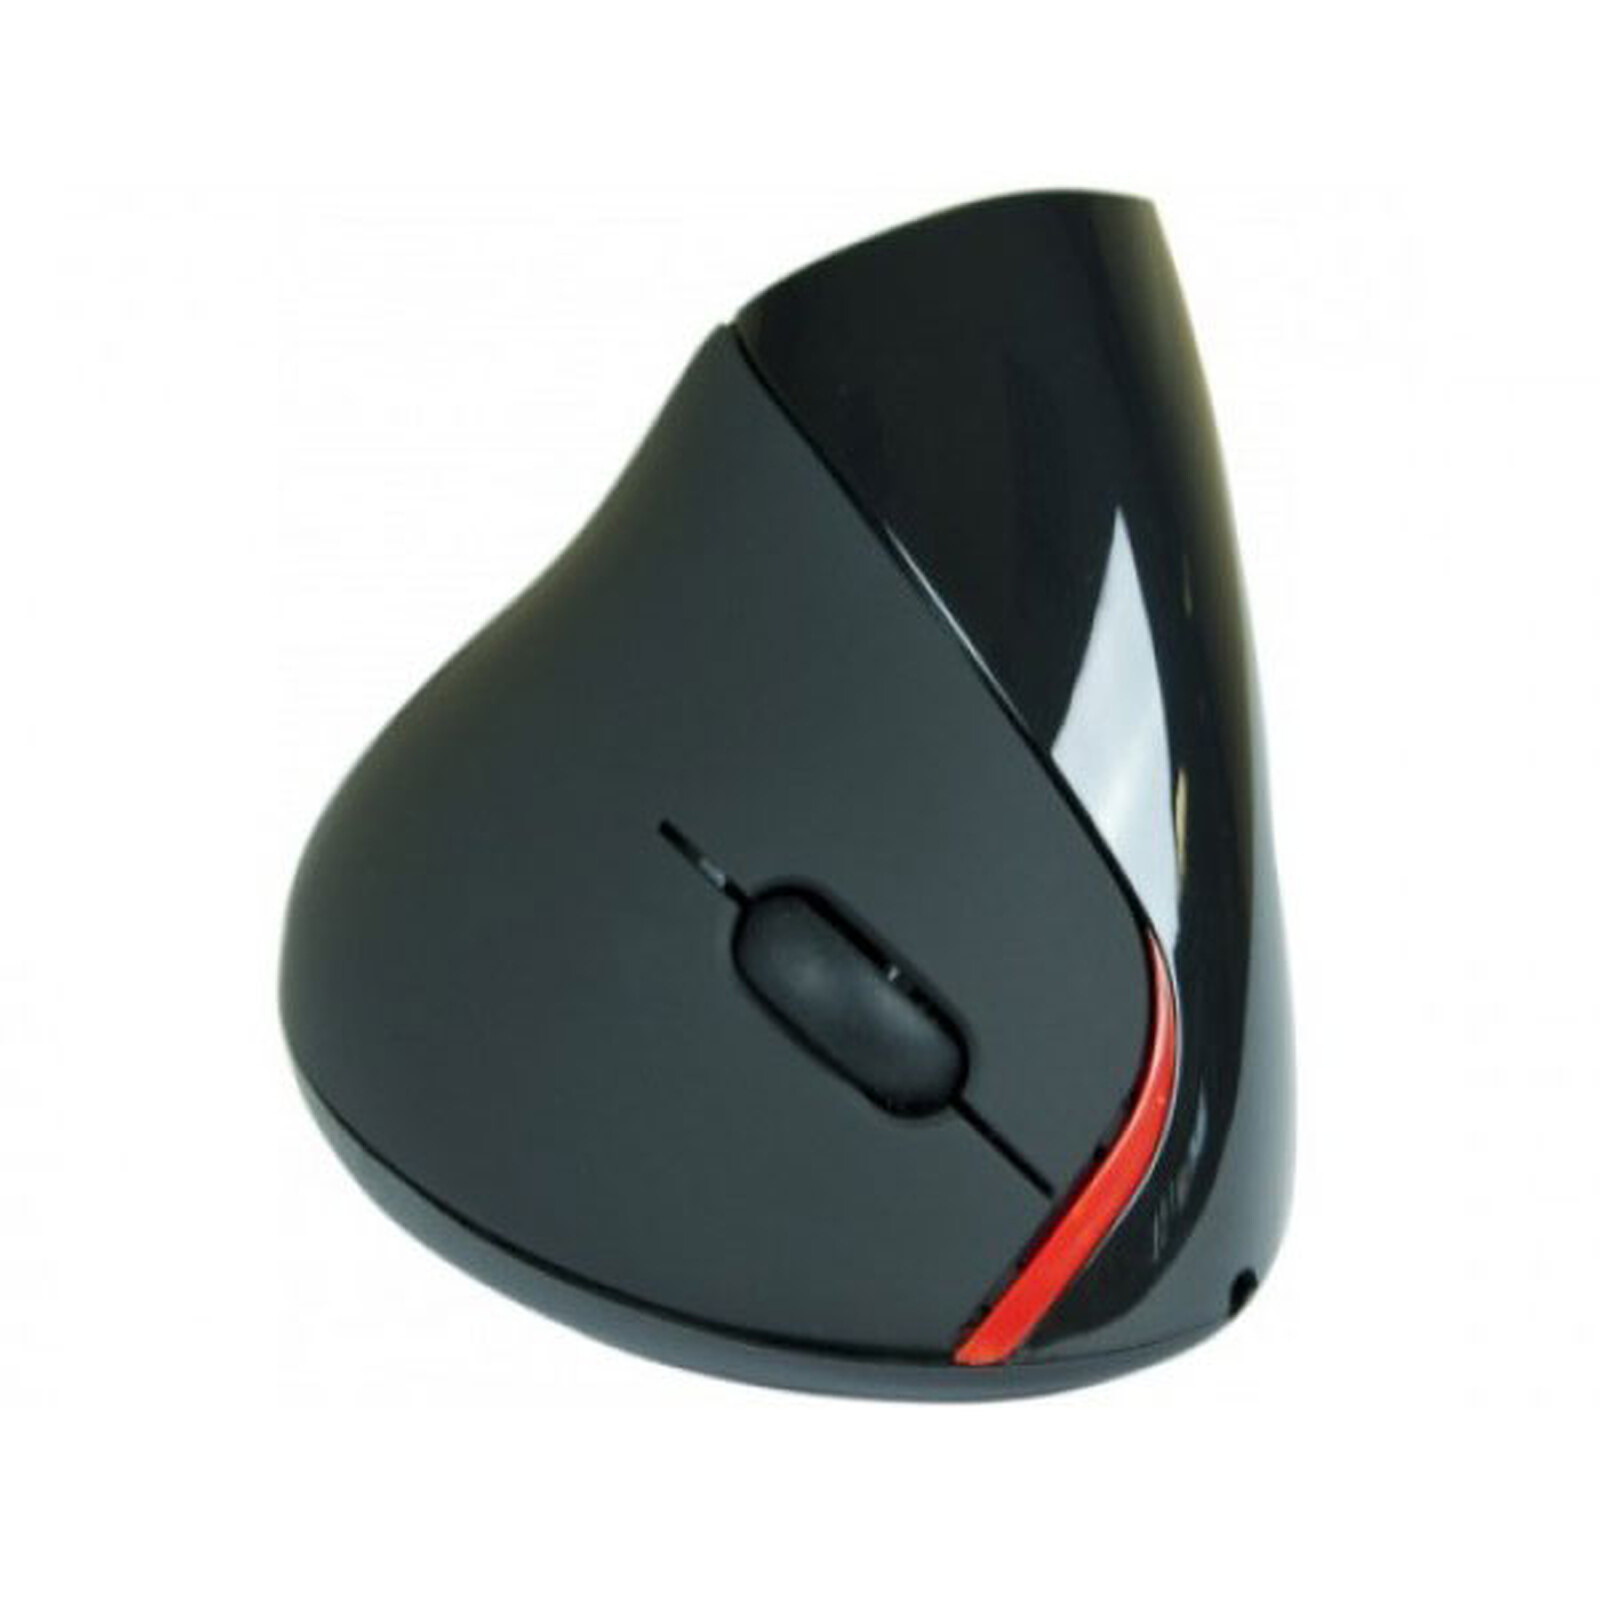 Souris ergonomique verticale USB (noire) - Souris PC - Garantie 3 ans LDLC